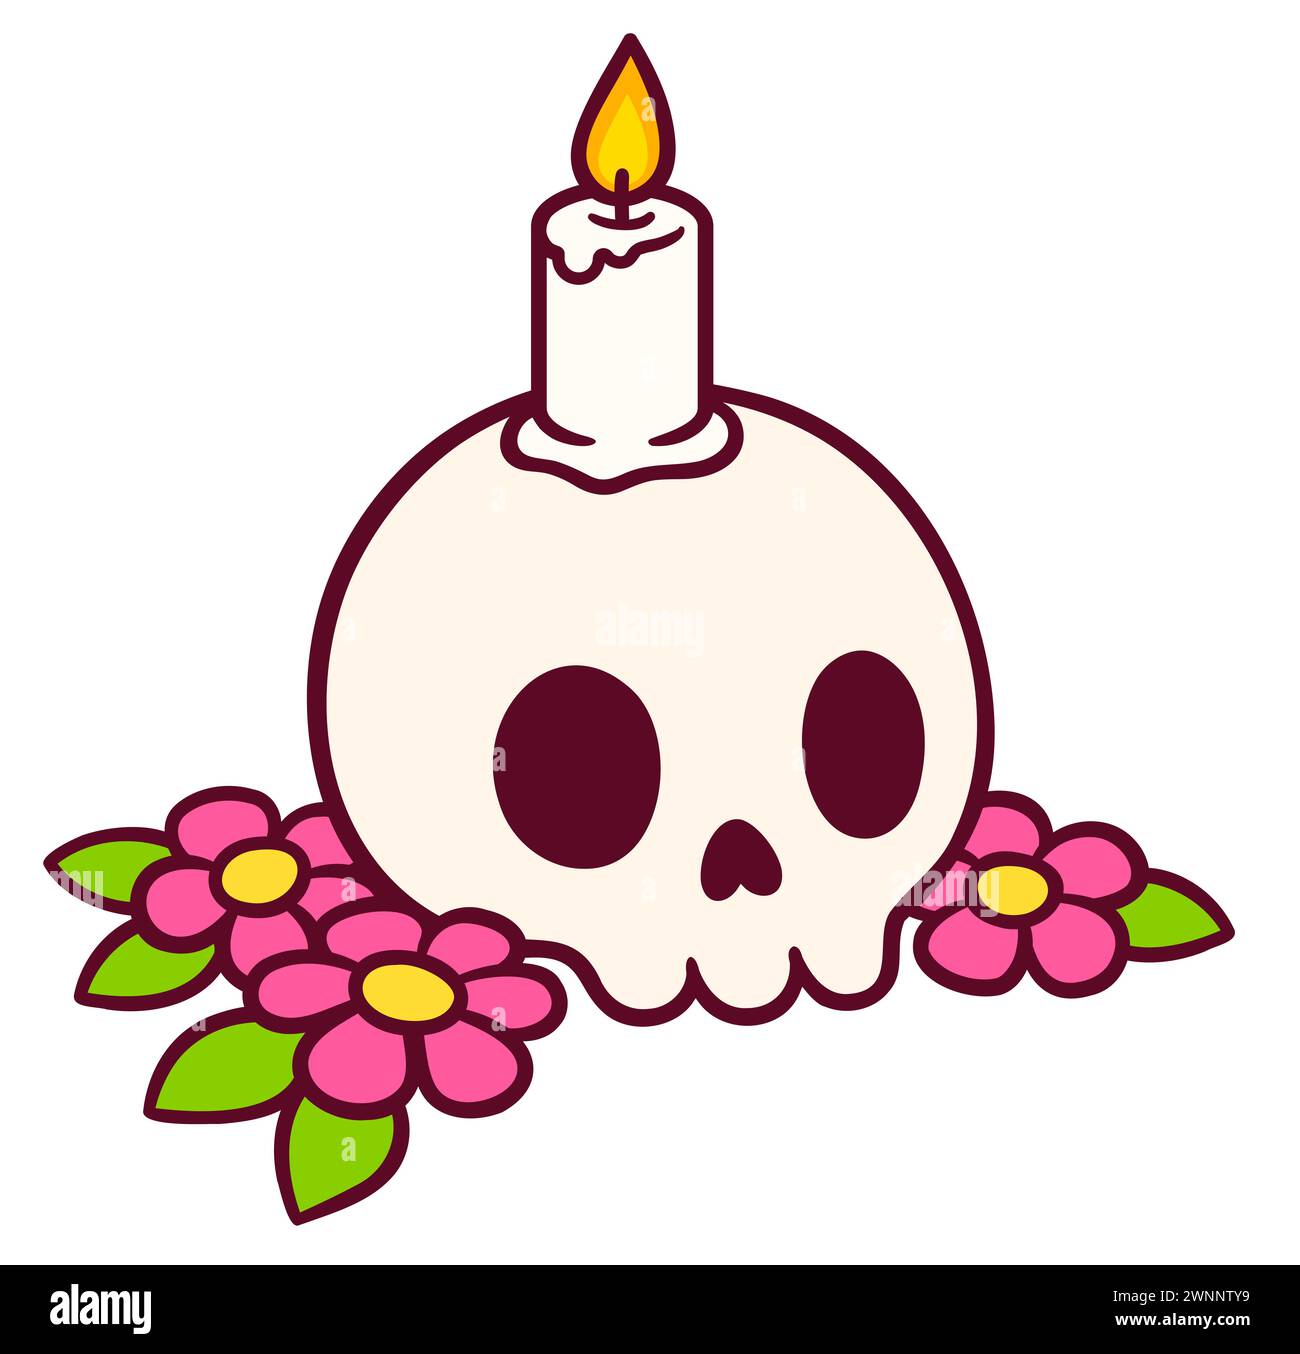 Disegno del cranio di un cartone animato con candela e fiori. Il giorno della decorazione morta. Simpatico flash o adesivo per tatuaggi, scarabocchio disegnato a mano. Illustrazione vettoriale. Illustrazione Vettoriale